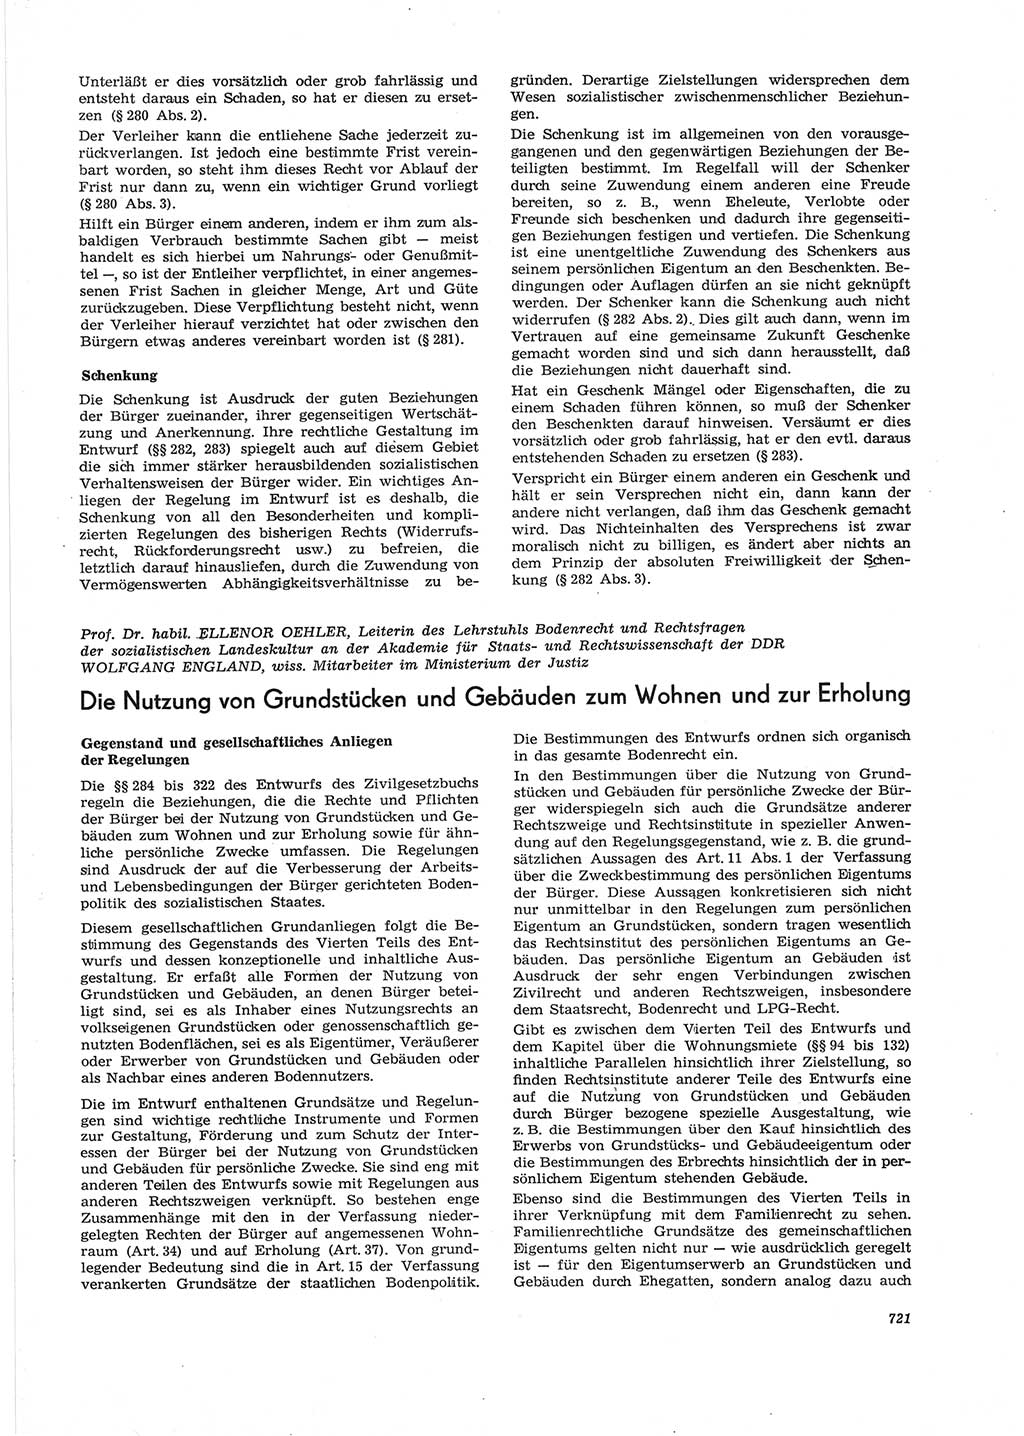 Neue Justiz (NJ), Zeitschrift für Recht und Rechtswissenschaft [Deutsche Demokratische Republik (DDR)], 28. Jahrgang 1974, Seite 721 (NJ DDR 1974, S. 721)